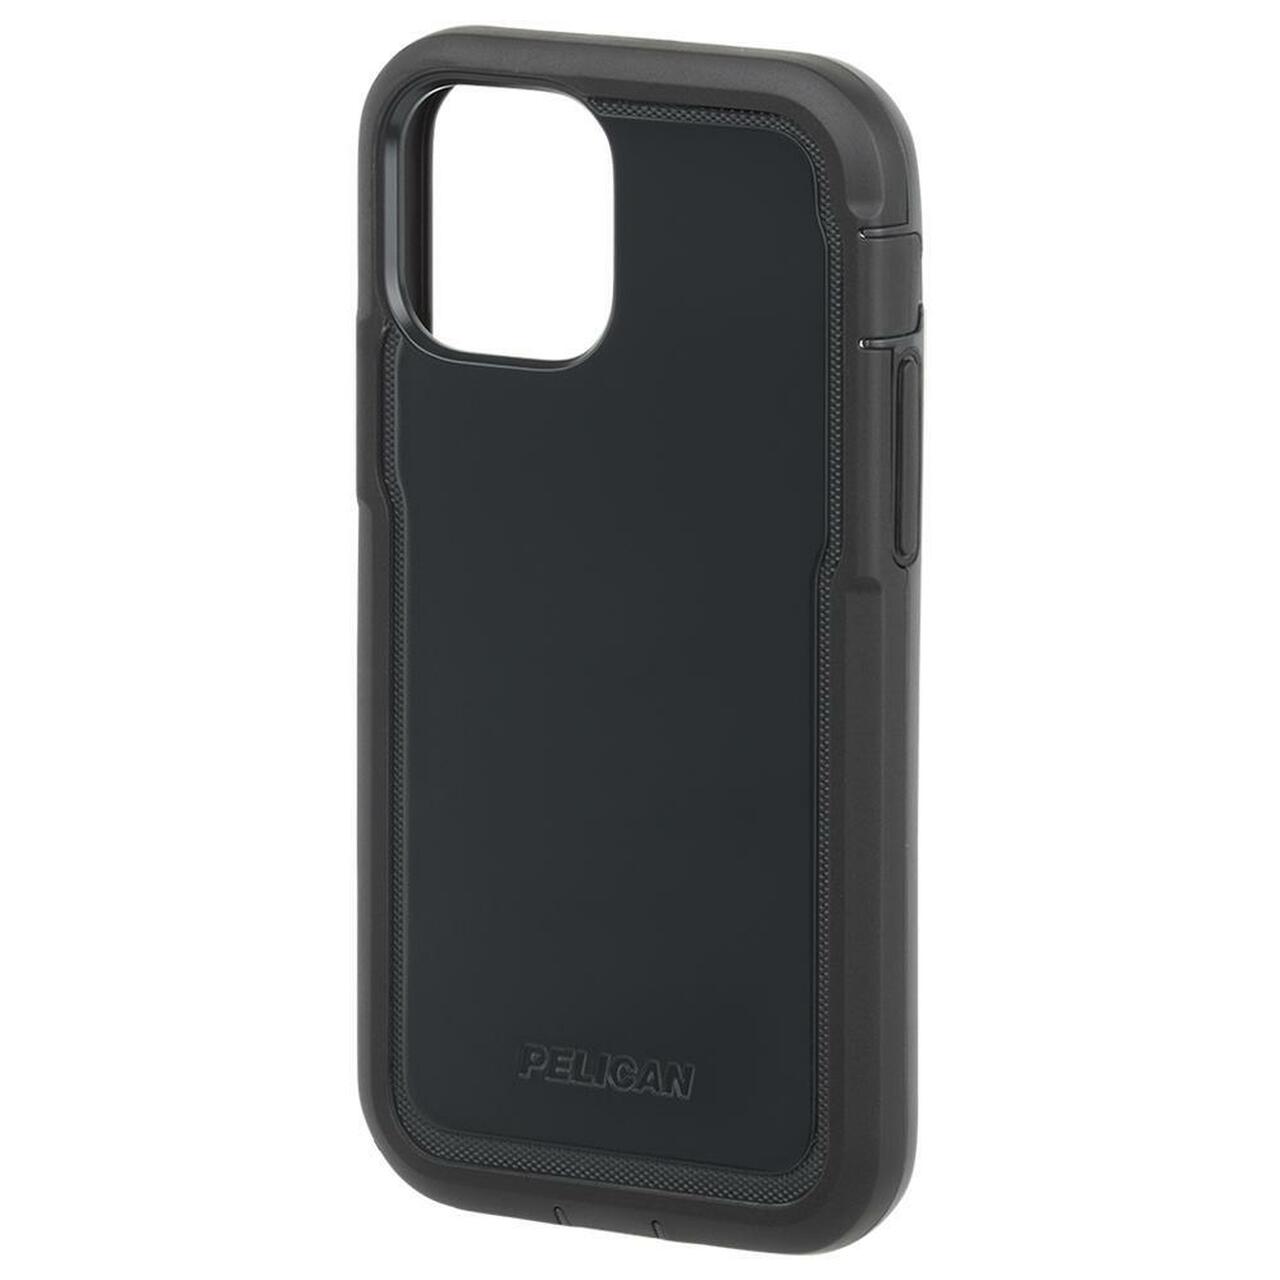 Pelican Marine Active Case for iPhone 12 mini - Black